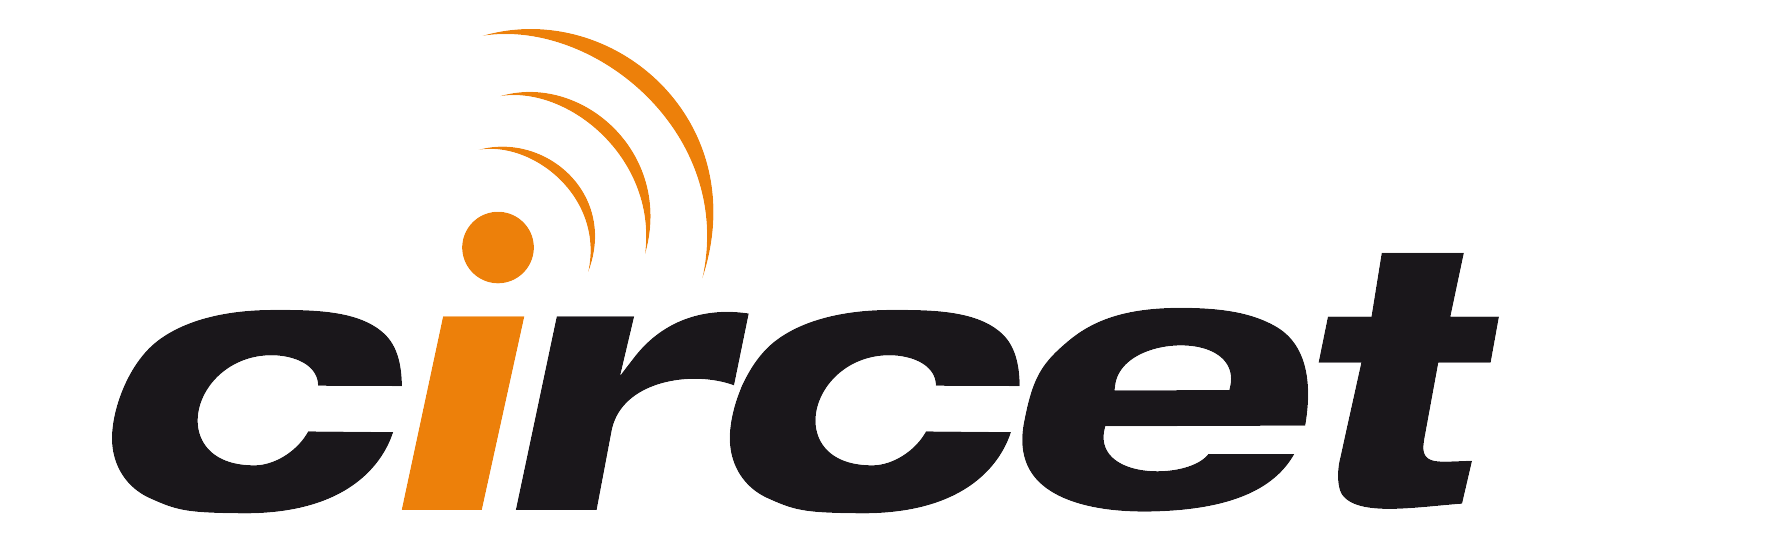 KBE Energy rejoint Circet France